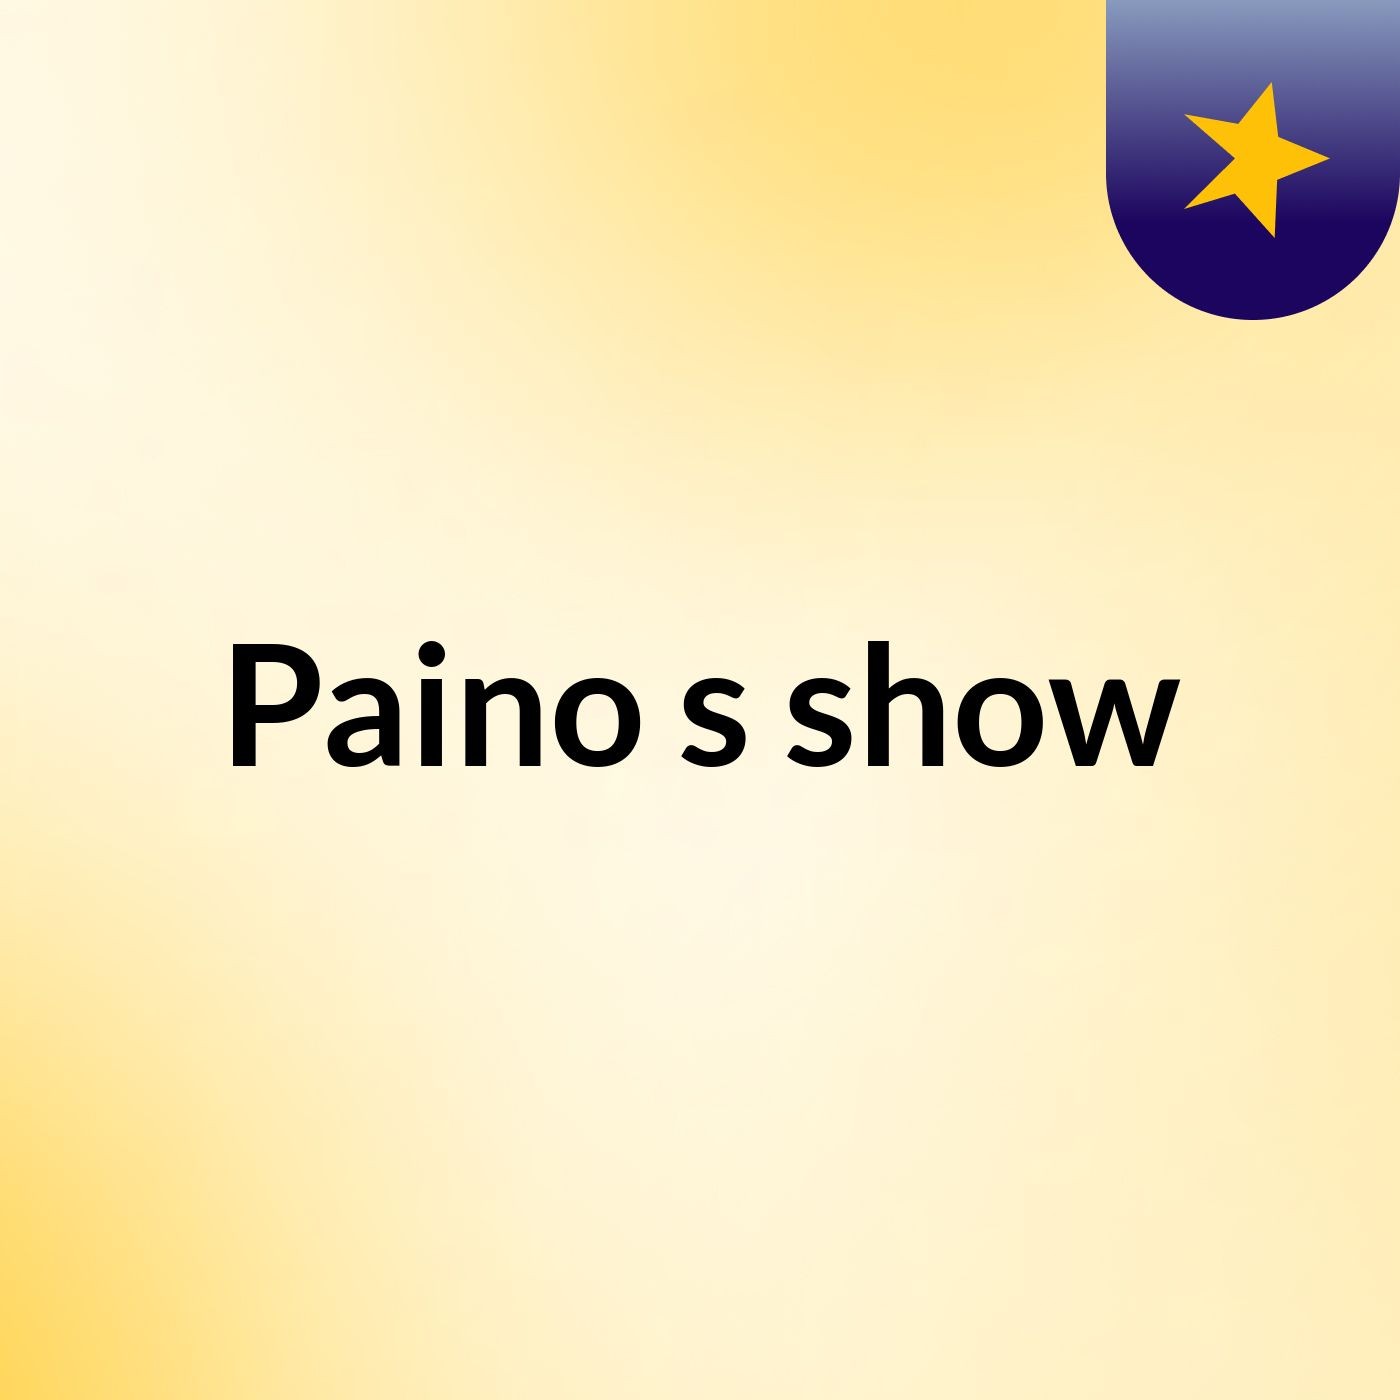 Paino's show